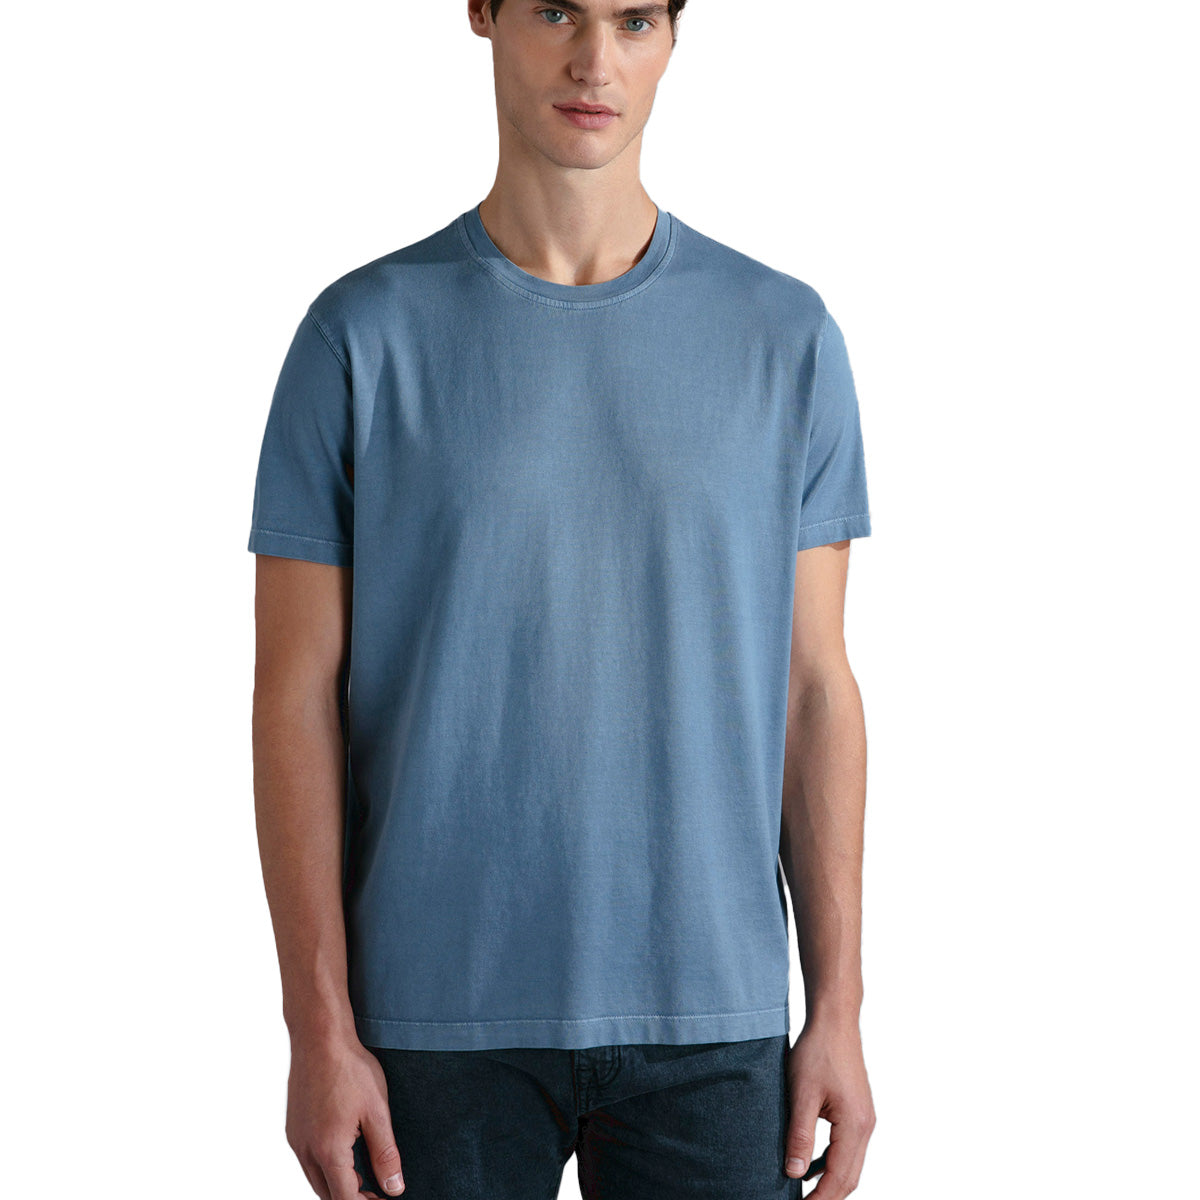 Denim Blue Cotton Jersey T-Shirt TEE SHIRTS Paul & Shark   